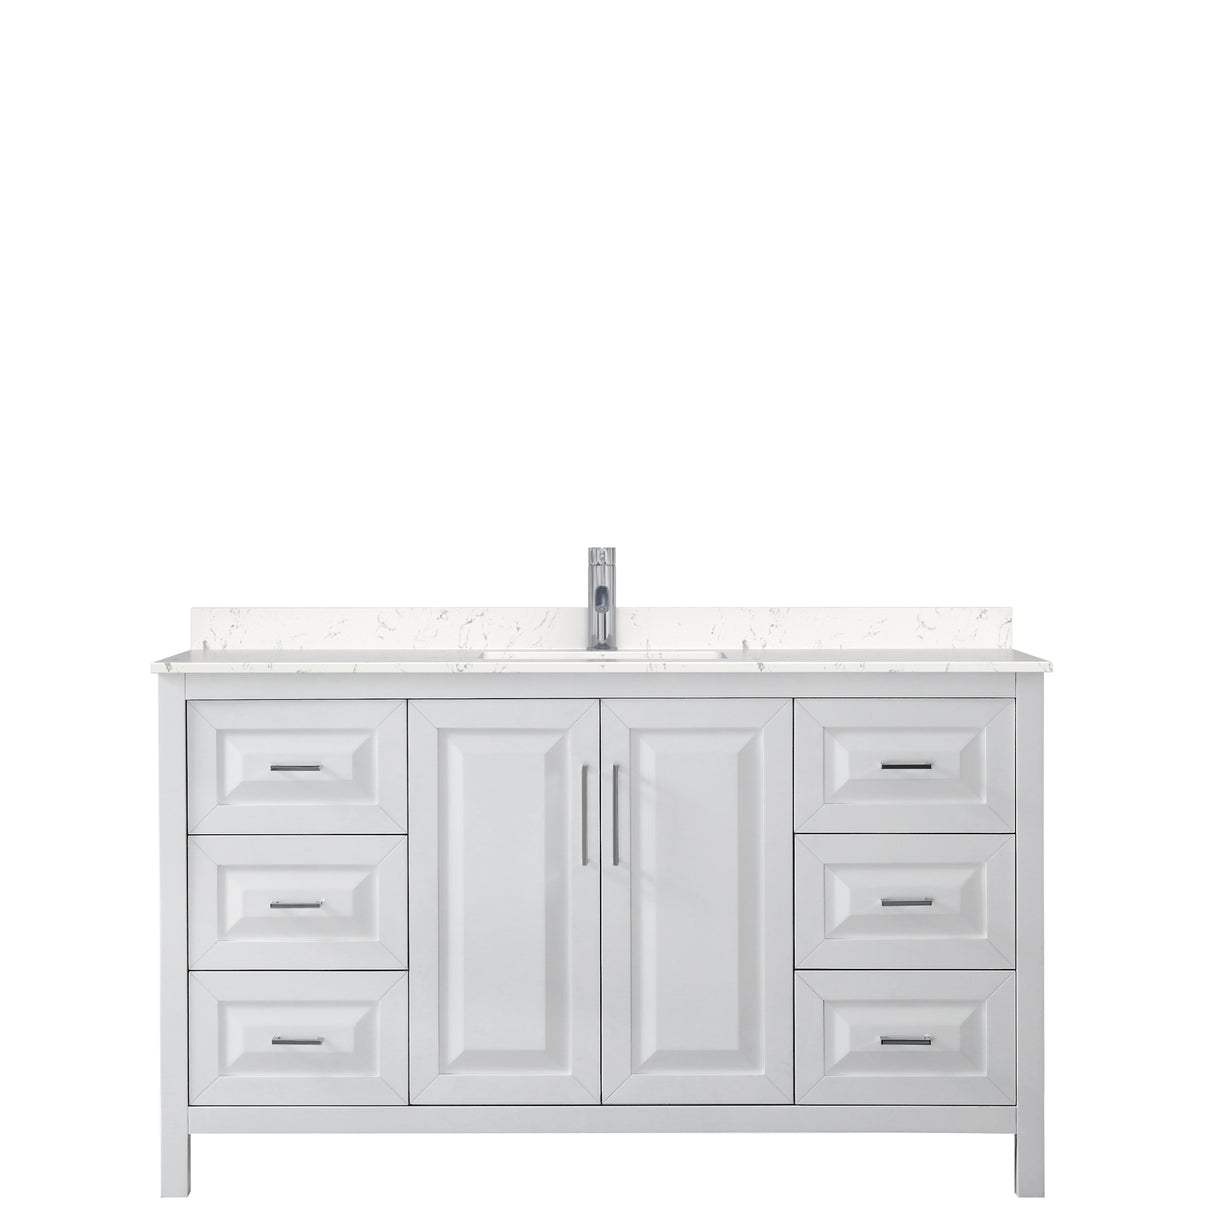 Daria 60 Inch Single Bathroom Vanity in White Carrara Cultured Marble Countertop Undermount Square Sink No Mirror